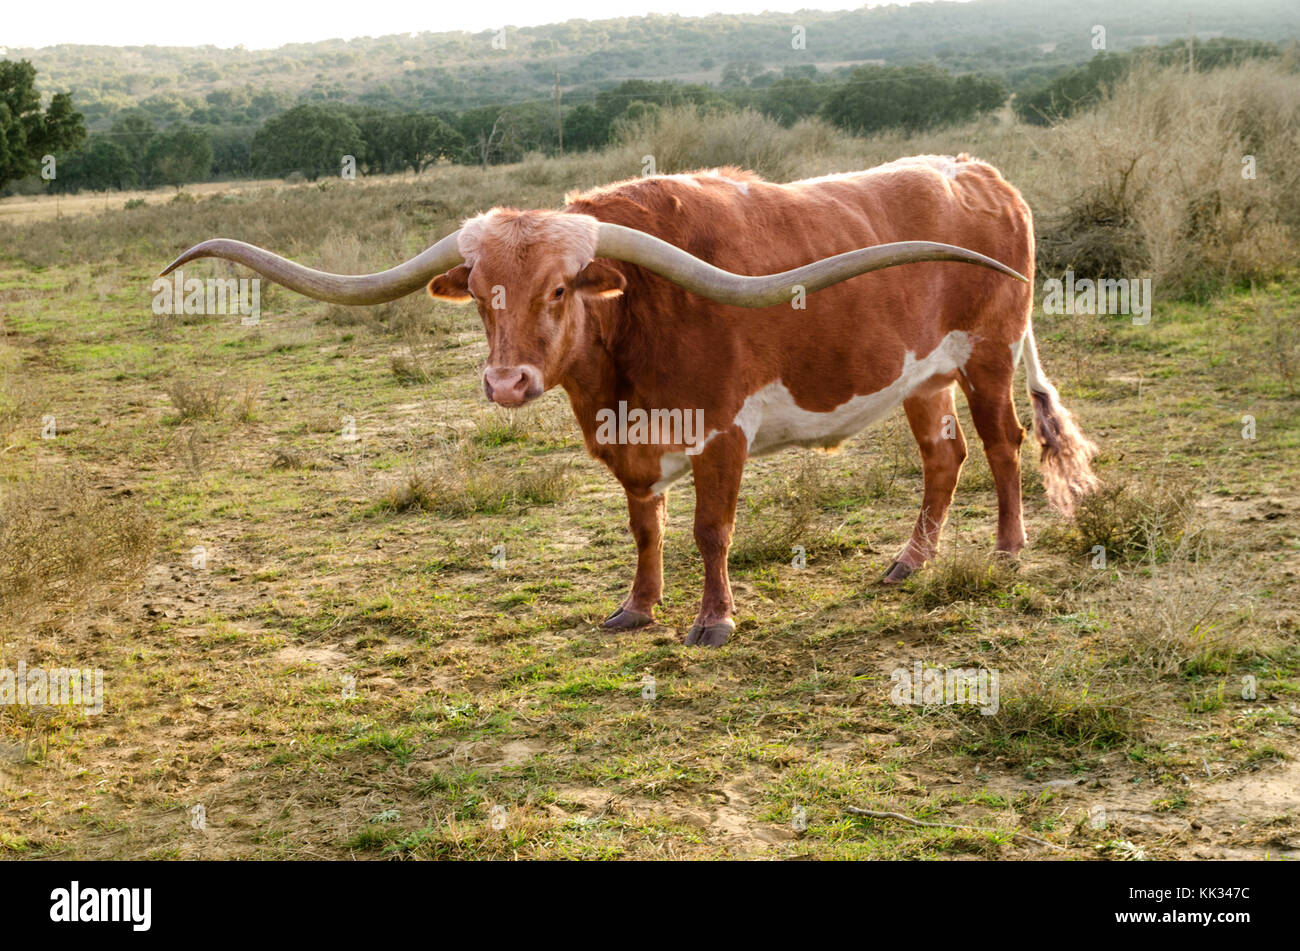 A Texas Long horn bull roams the Texas open range Stock Photo